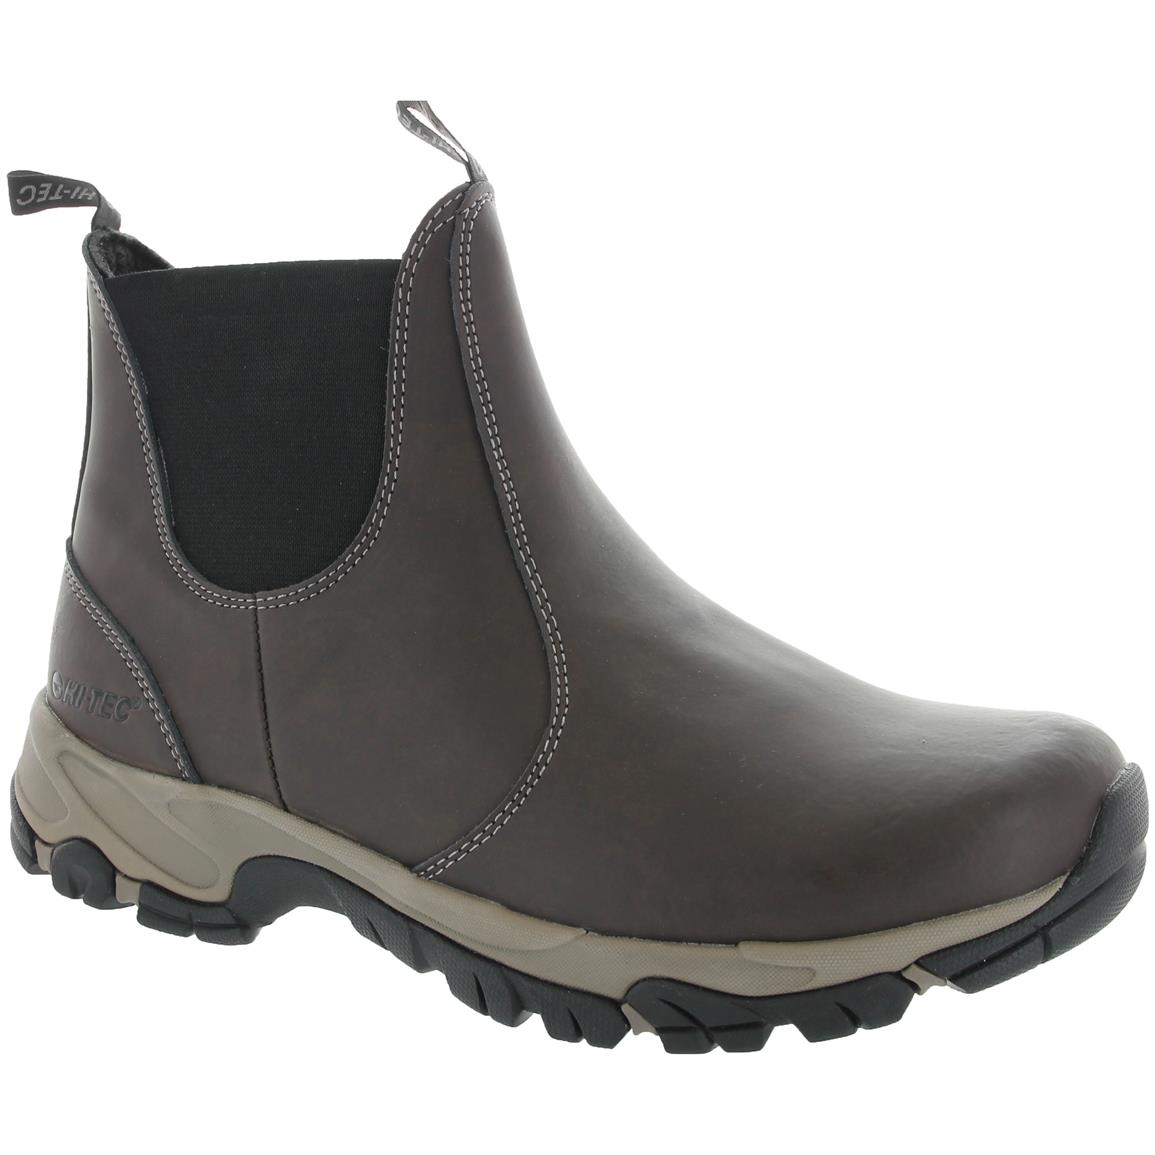 Hi-Tec Altitude Chelsea Men's Waterproof Boots - 672396, Casual Shoes ...